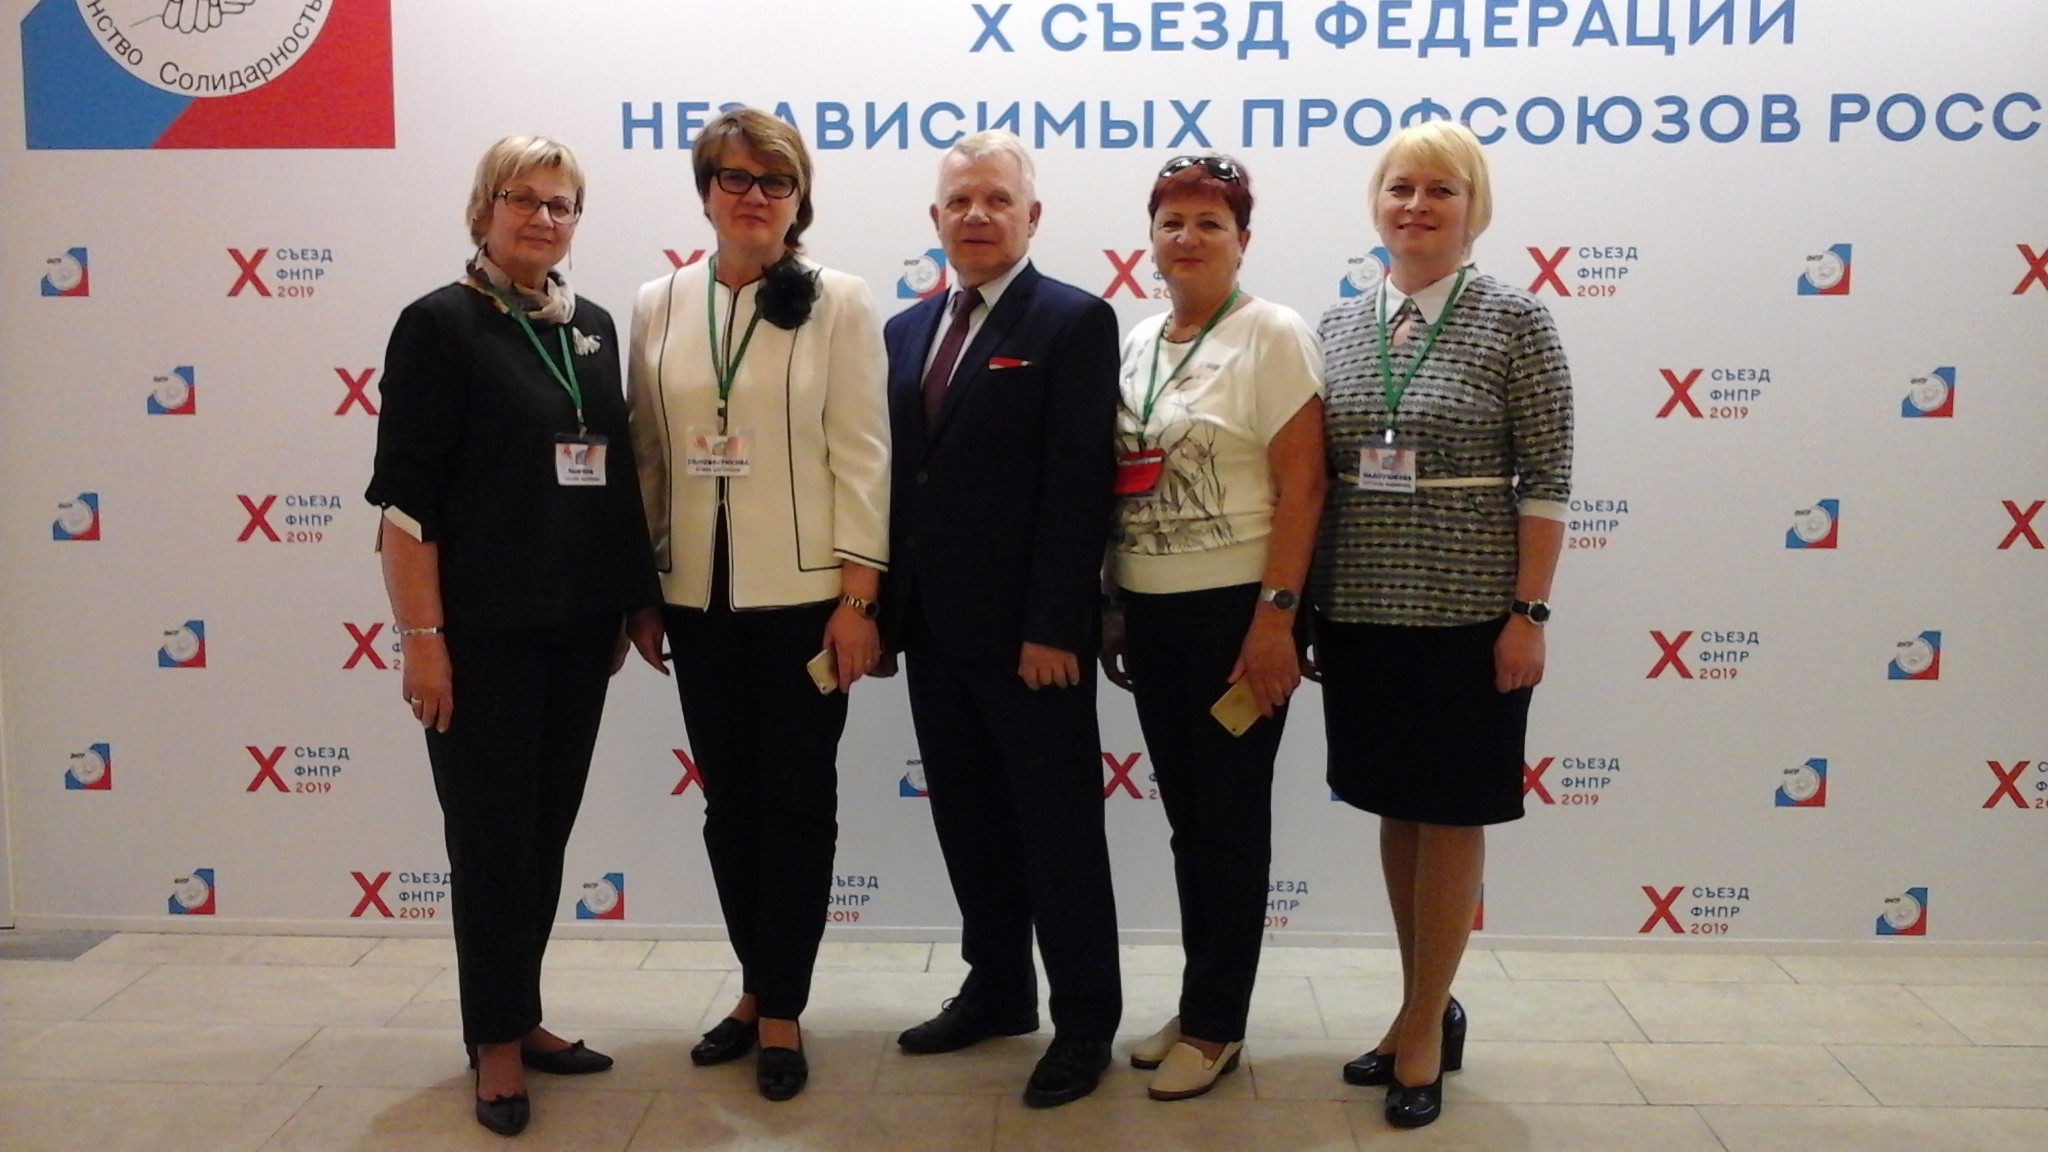 Члены Общественной Палаты Вологодской области, представители профсоюзов, участвуют в X Съезде Федерации независимых профсоюзов России